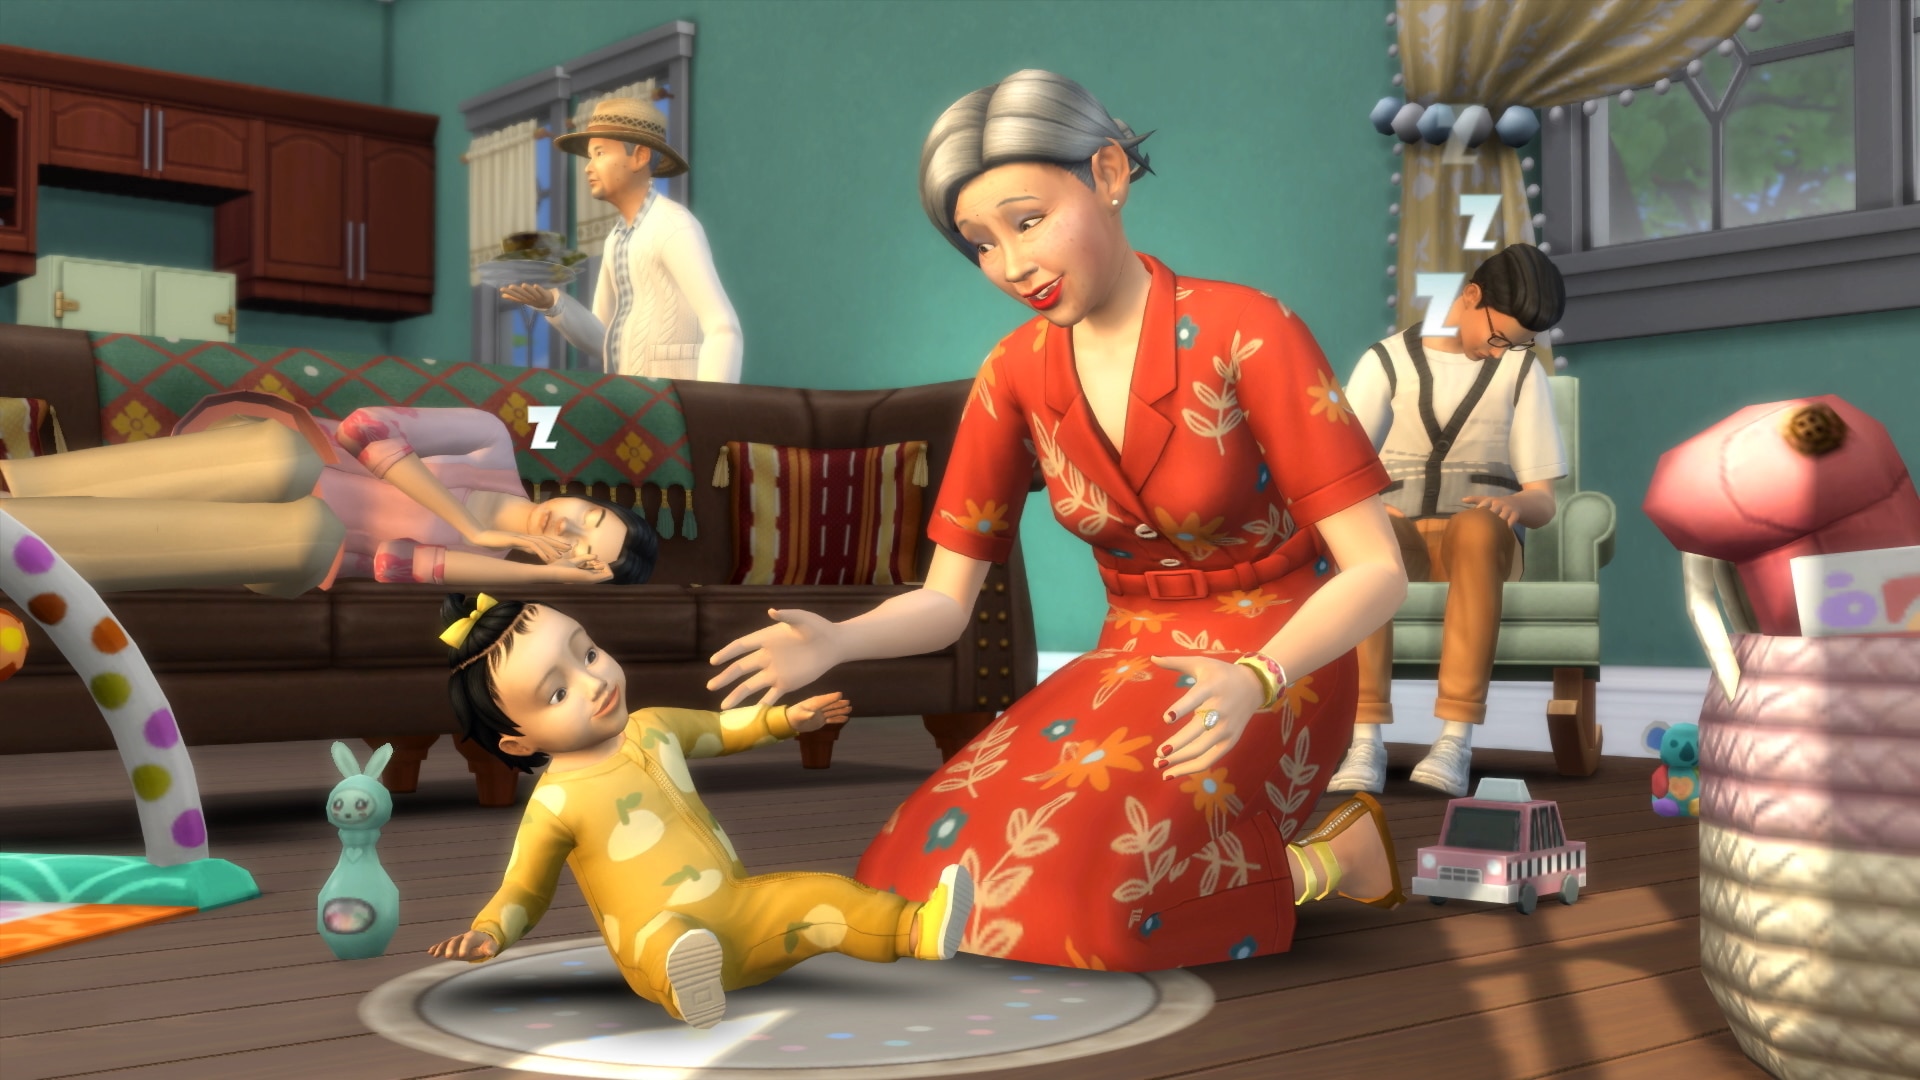 Bản mở rộng Growing Together của The Sims 4 sẽ mở ra một thế giới mới đầy thú vị đến không ngờ! Đây là cơ hội để bạn cùng gia đình và bạn bè thực sự tăng cường tình cảm bằng những hoạt động đầy sáng tạo và sống động. Hãy nhanh chân đến và khám phá thế giới đầy màu sắc này ngay hôm nay!